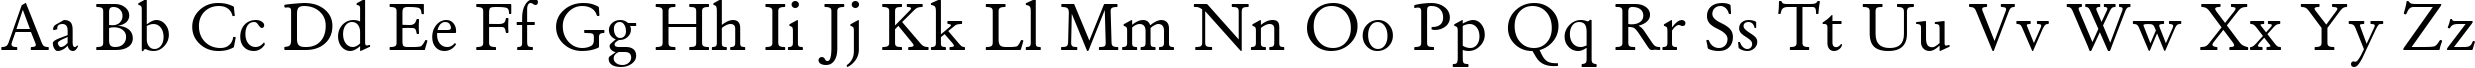 Пример написания английского алфавита шрифтом Garamond Antiqua